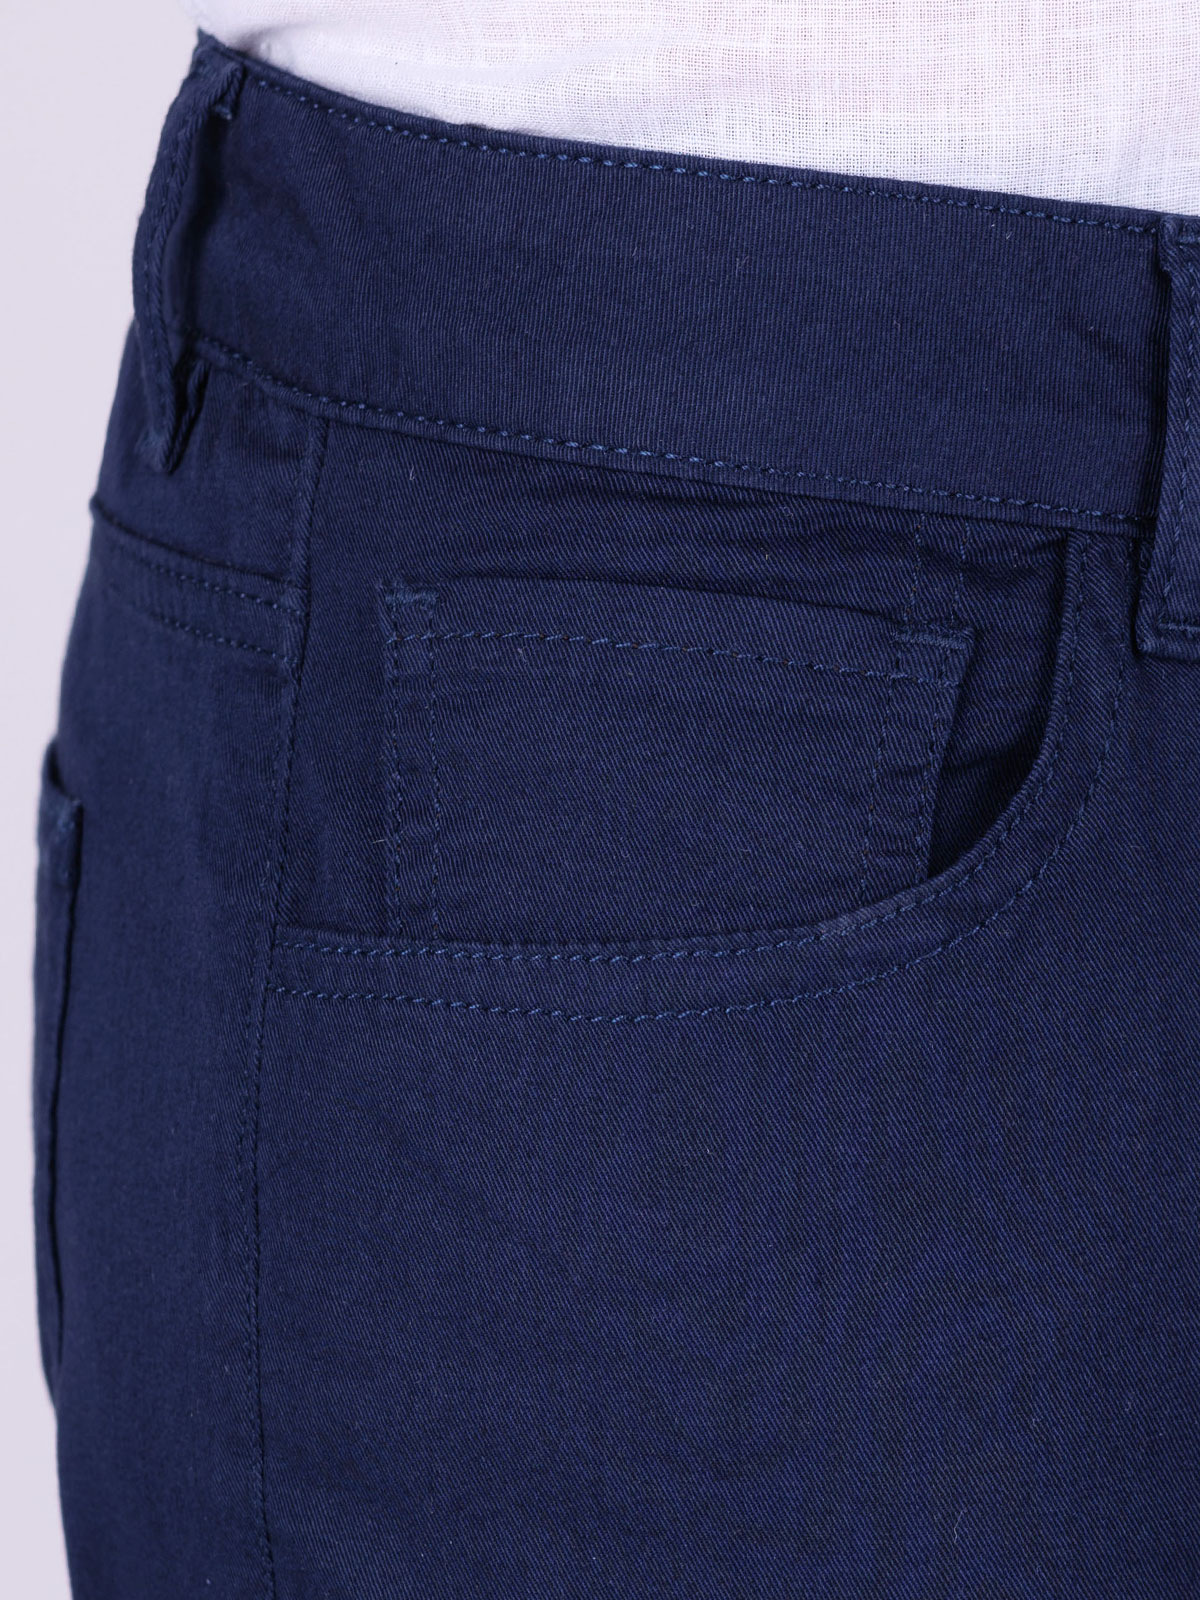 Pantaloni bleumarin cu cinci buzunare - 60301 € 66.37 img2